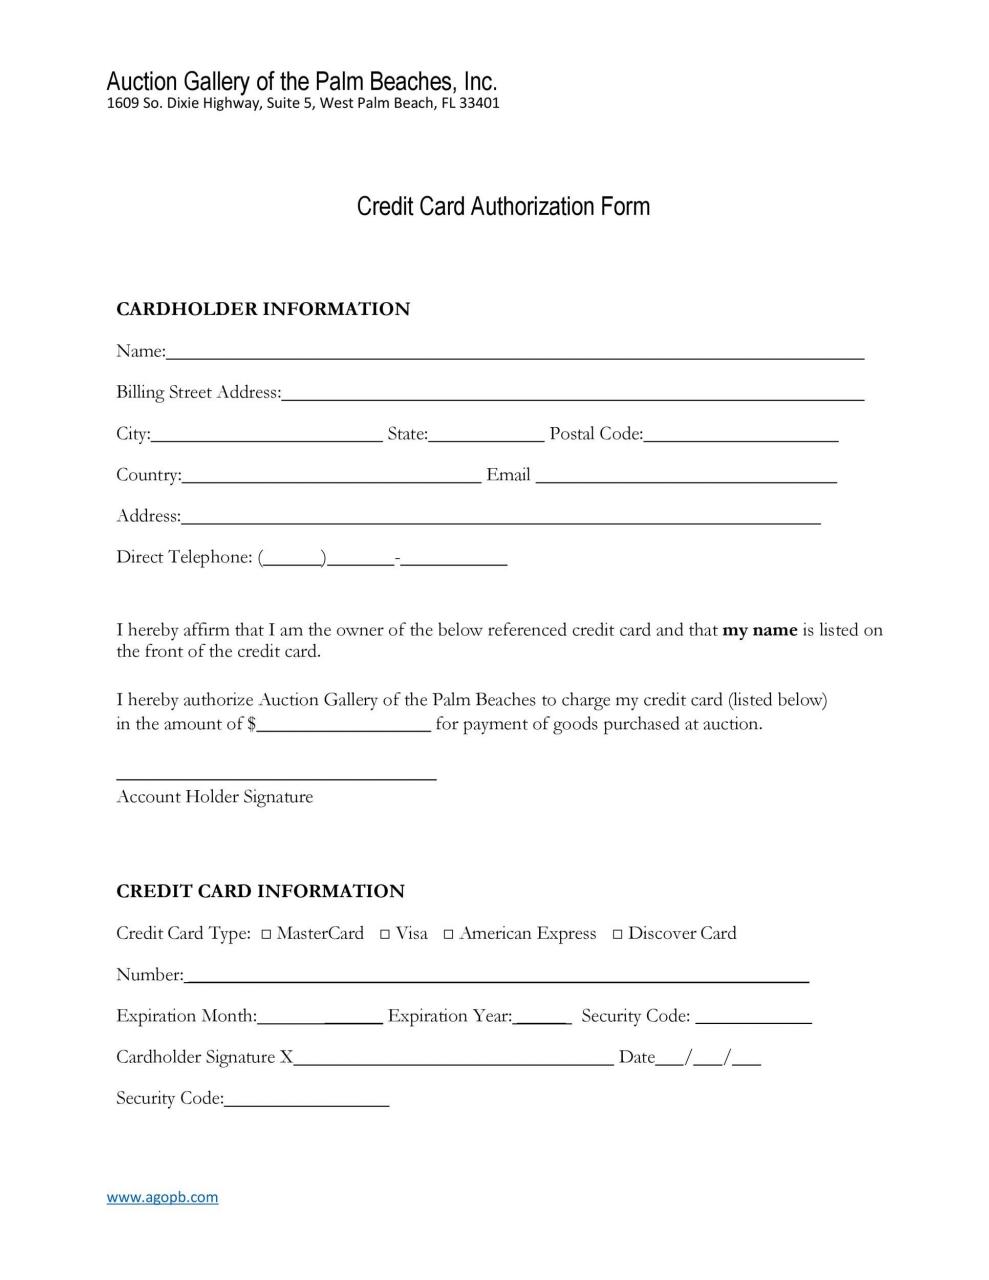 Modèle de formulaire d'autorisation de carte de crédit gratuit 09